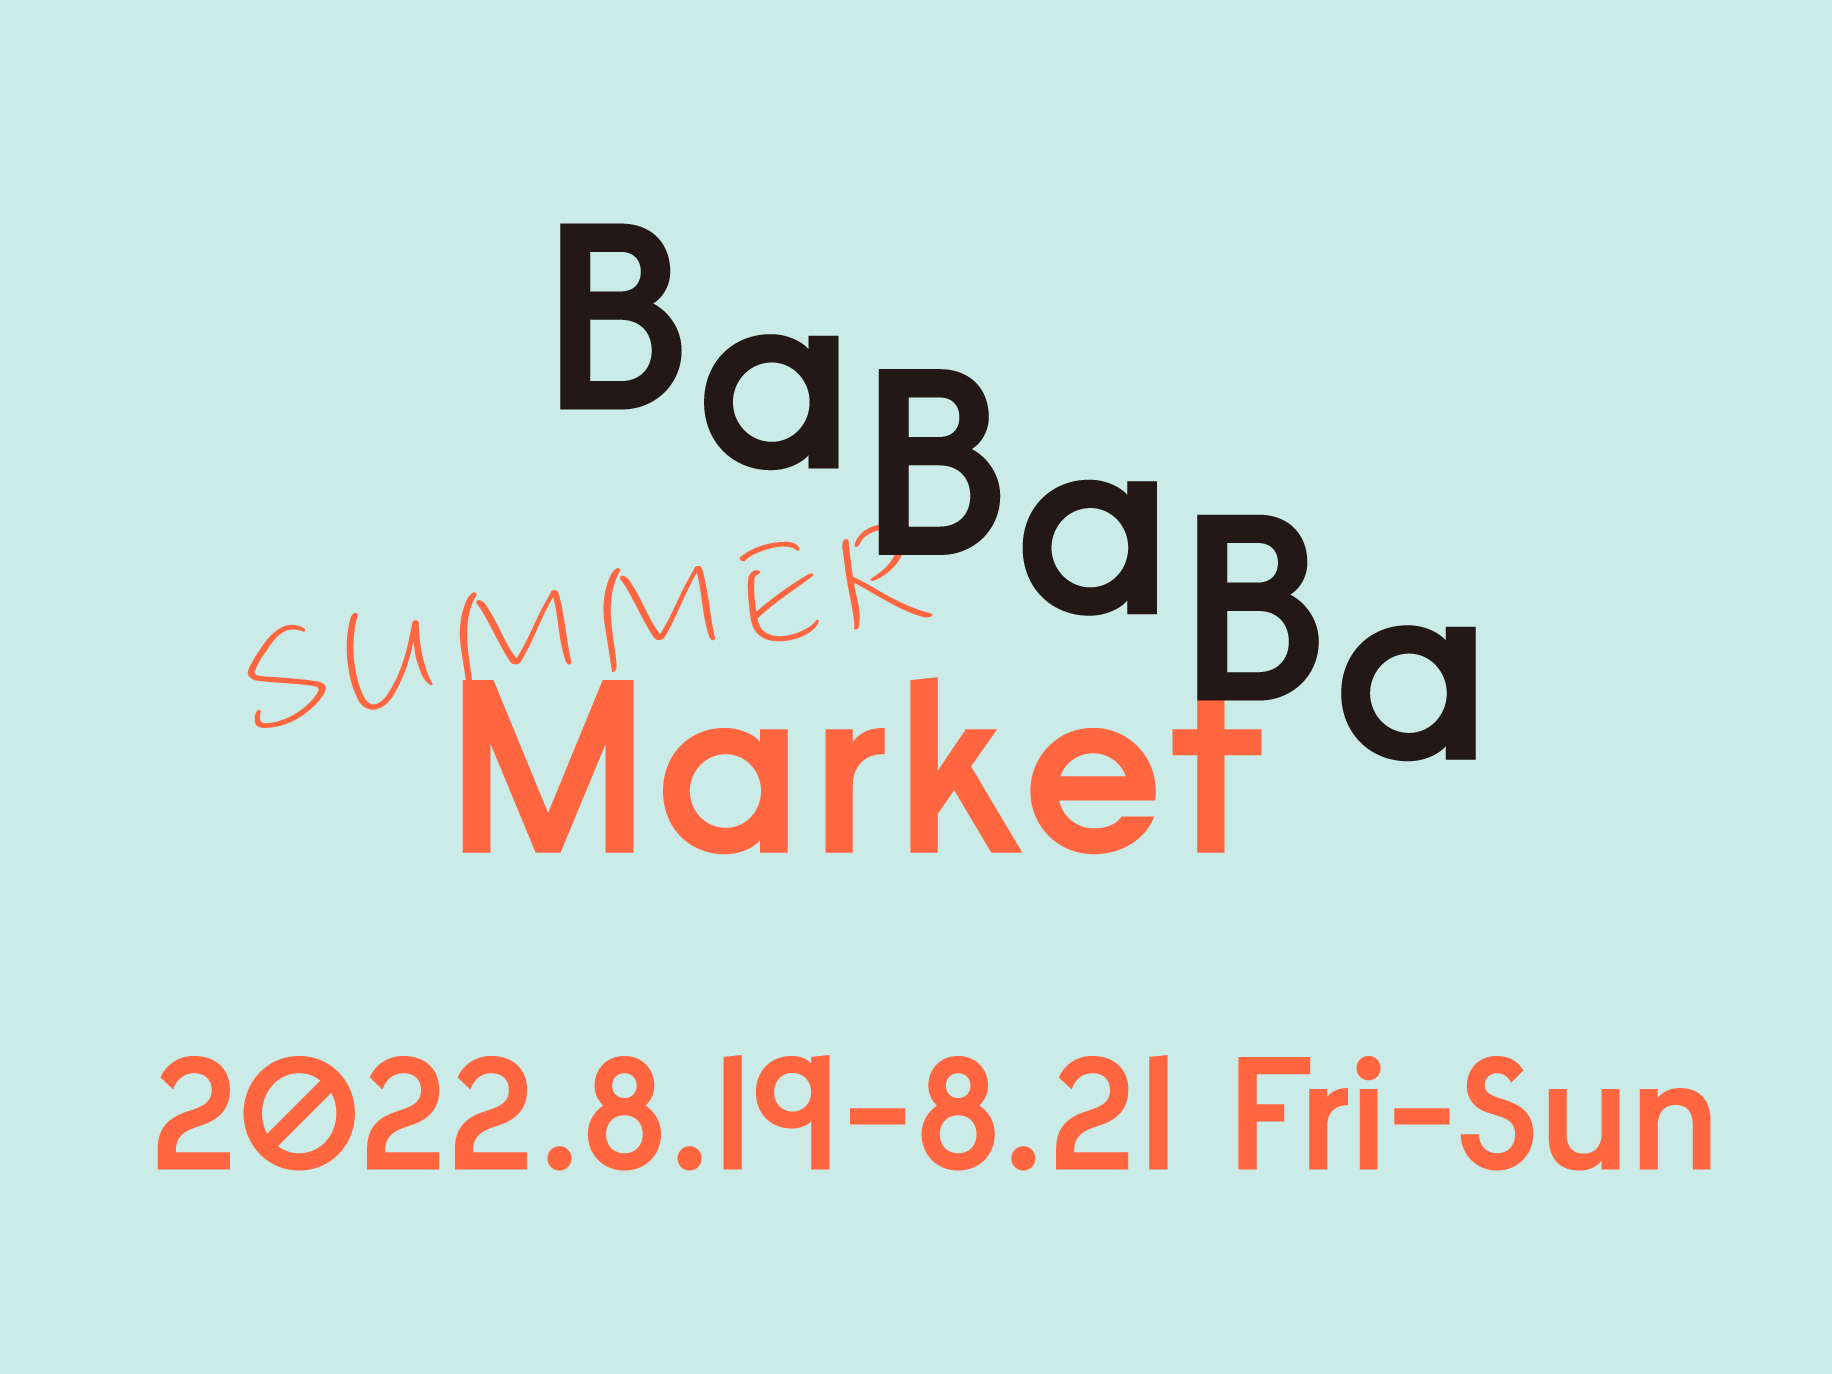 ３日かぎりの、サマーマーケット。―BaBaBa Market